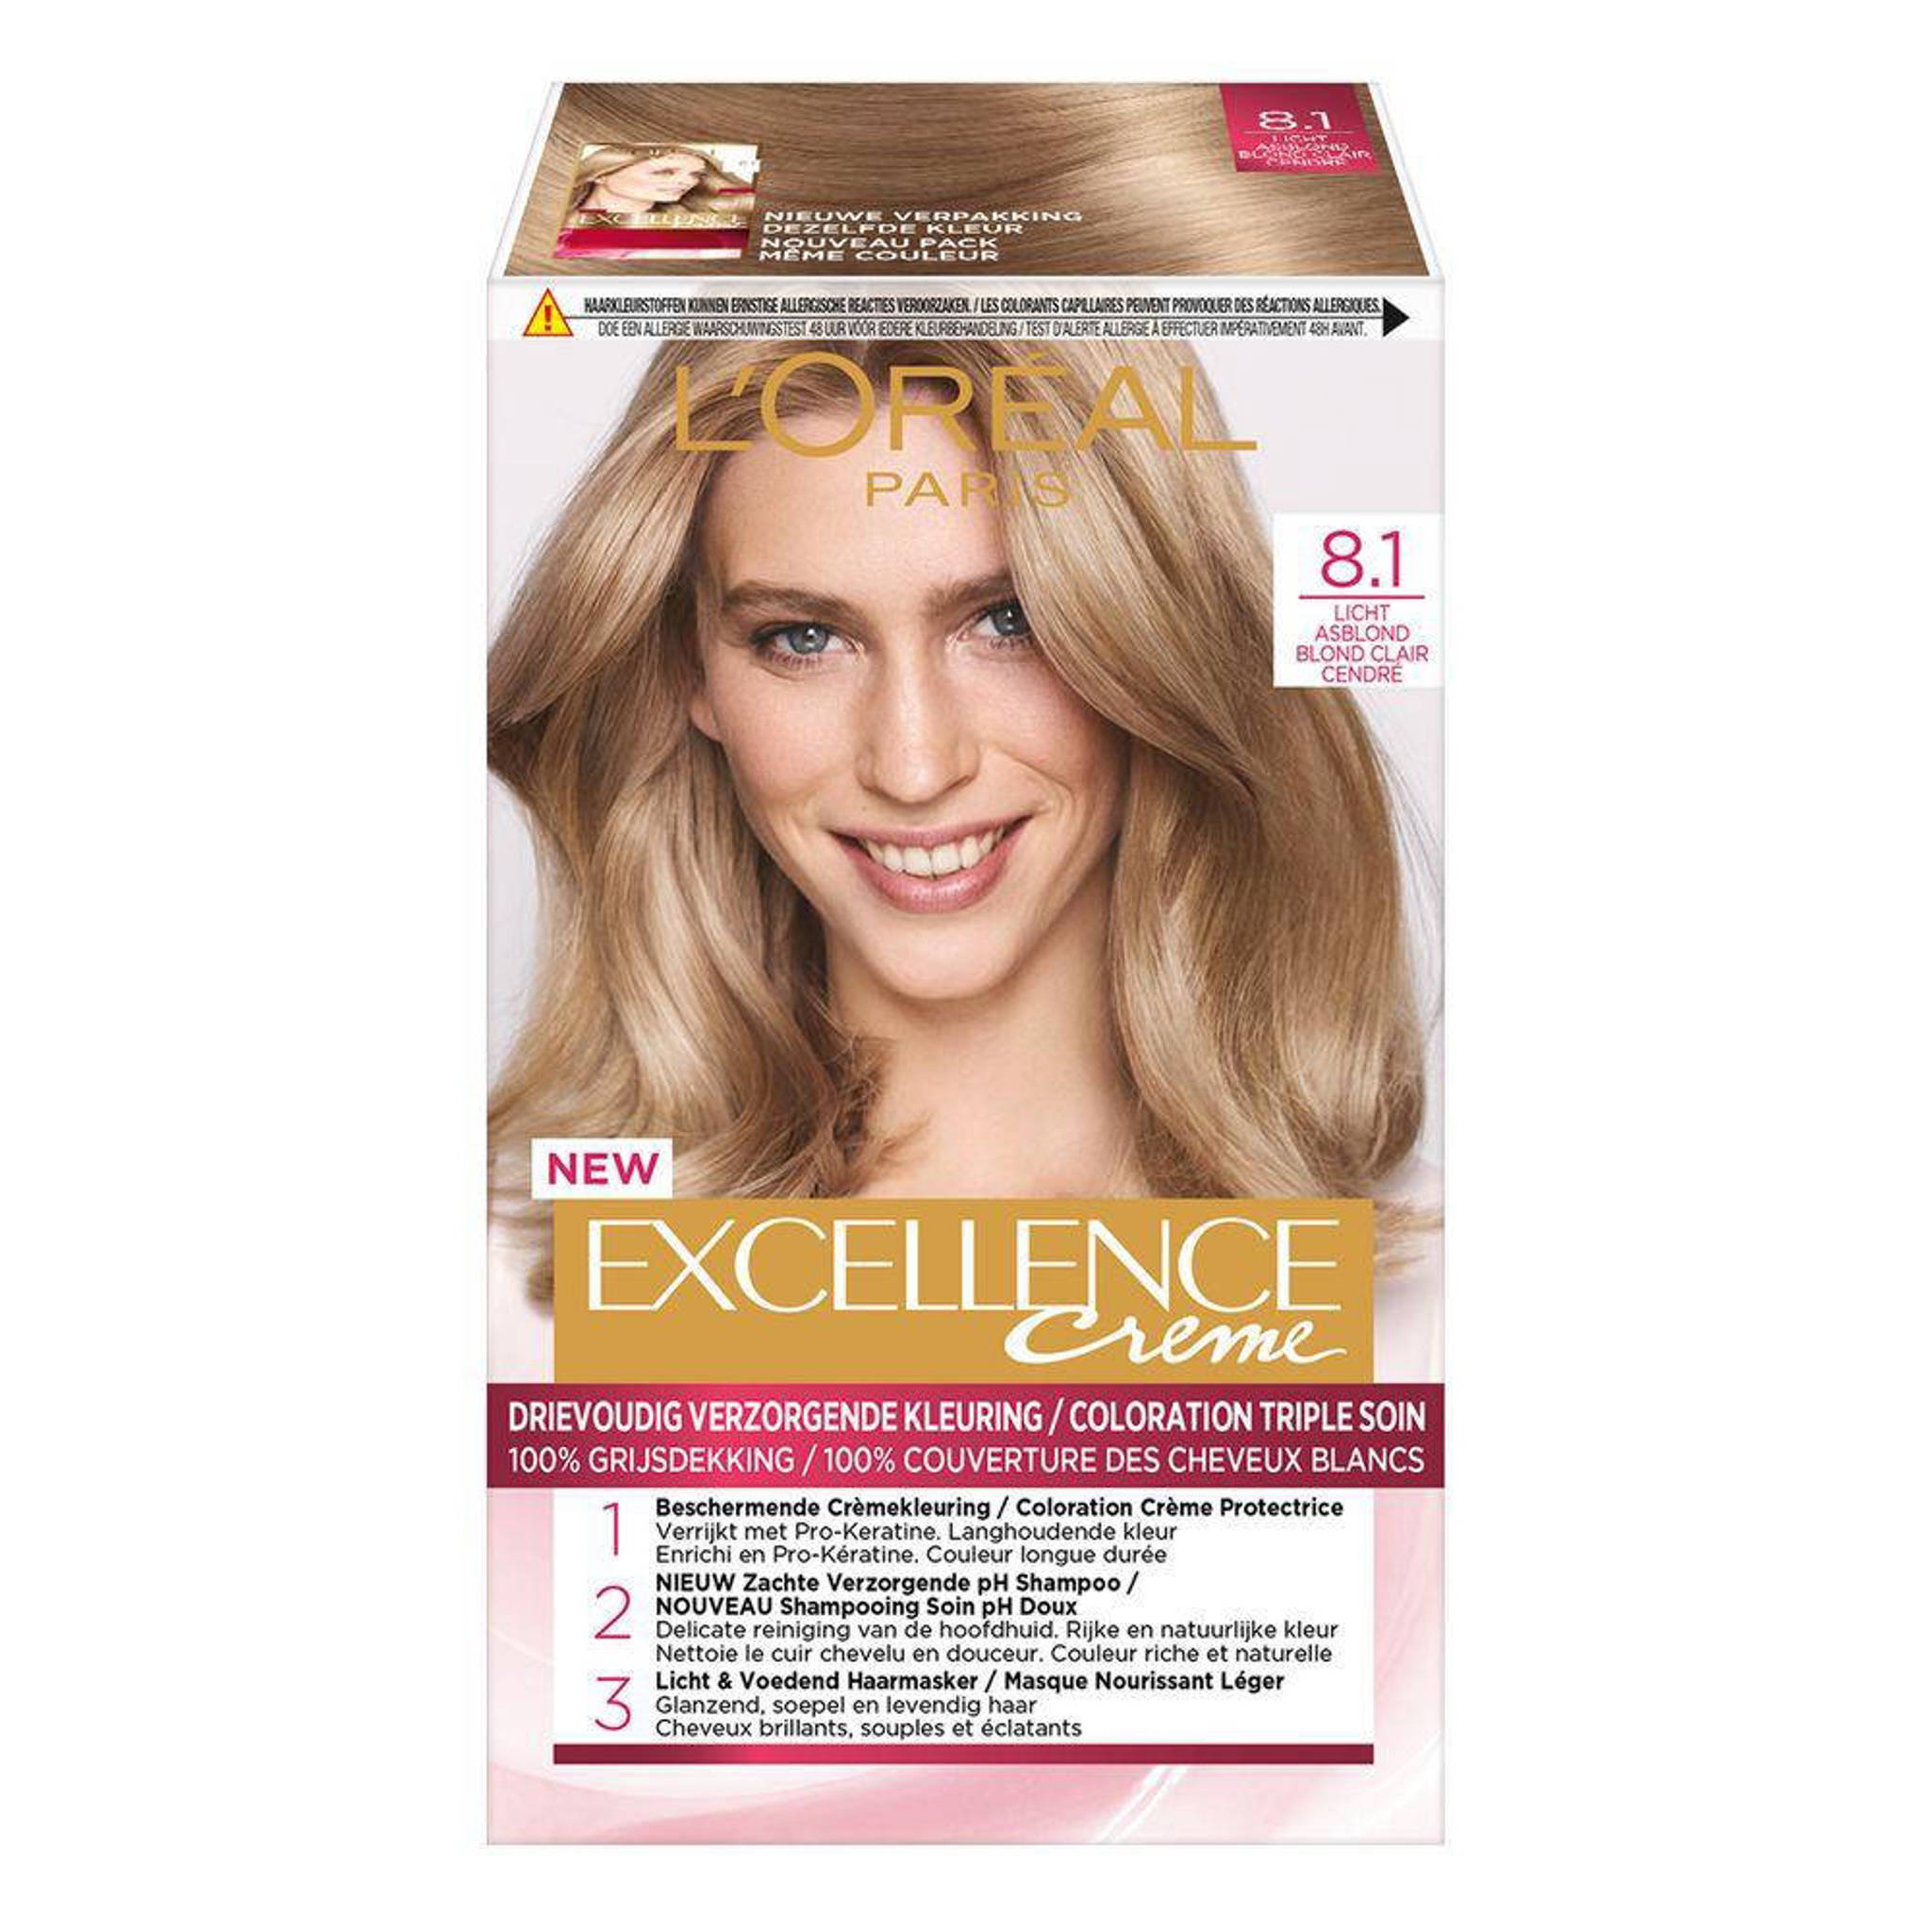 ik ben gelukkig Maak plaats hebzuchtig L'Oréal Paris Excellence Crème haarkleuring - Licht 8.1 Asblond | wehkamp